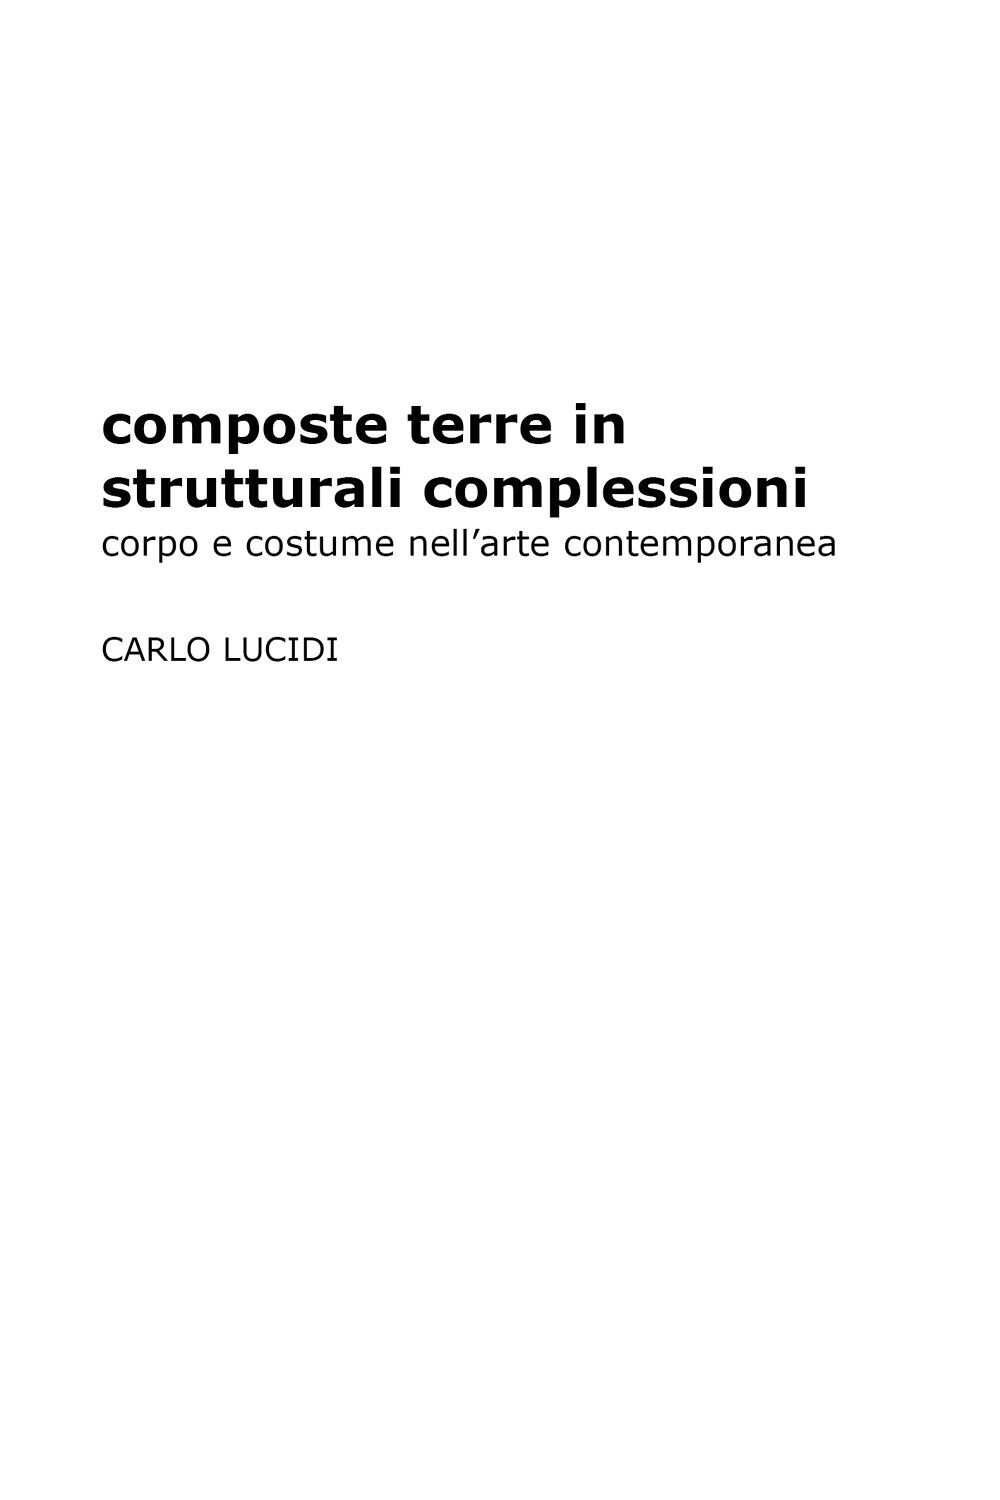 Composte terre in strutturali complessioni (Carlo Lucidi, 2019) - ER libro usato